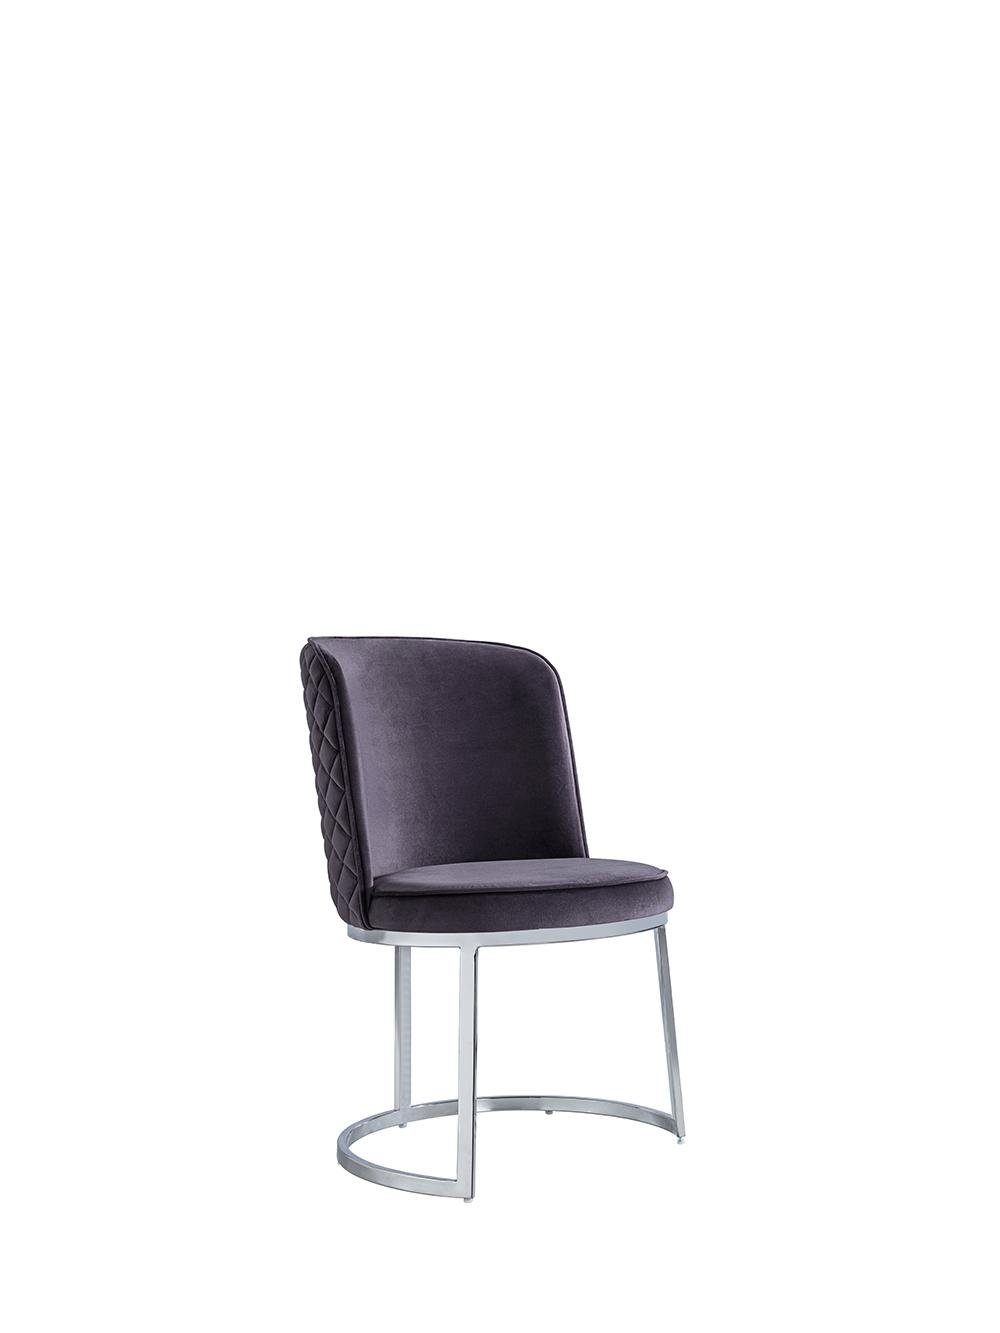 Möbel Made Esszimmer Luxus Neu JVmoebel (1 Design Esszimmerstuhl Europa Moderne Stühle Einrichtung St), Stuhl in